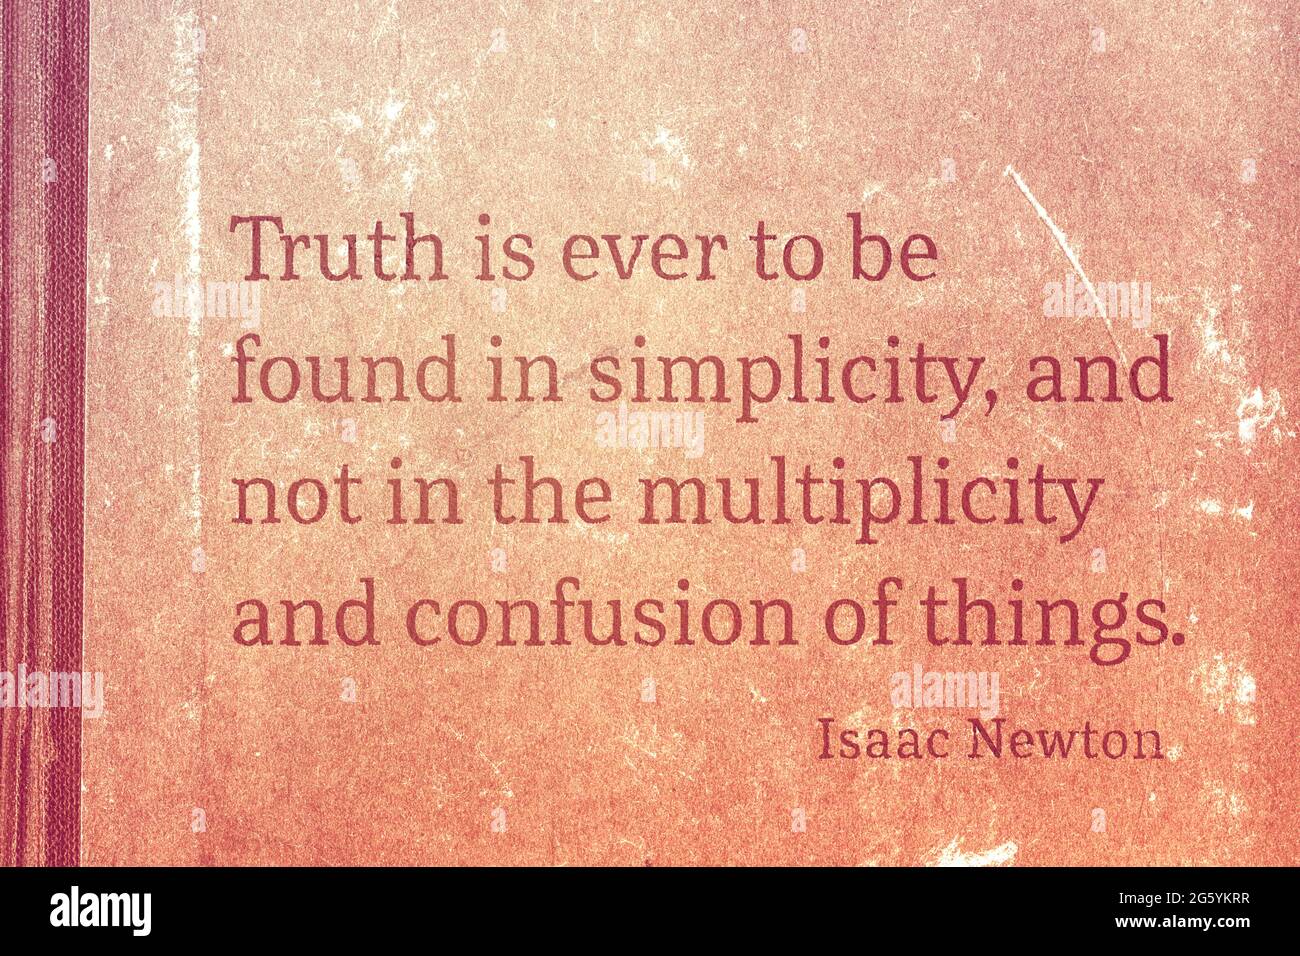 Wahrheit ist immer in Einfachheit zu finden - berühmter englischer Physiker und Mathematiker Sir Isaac Newton Zitat gedruckt auf Vintage-Karton Stockfoto